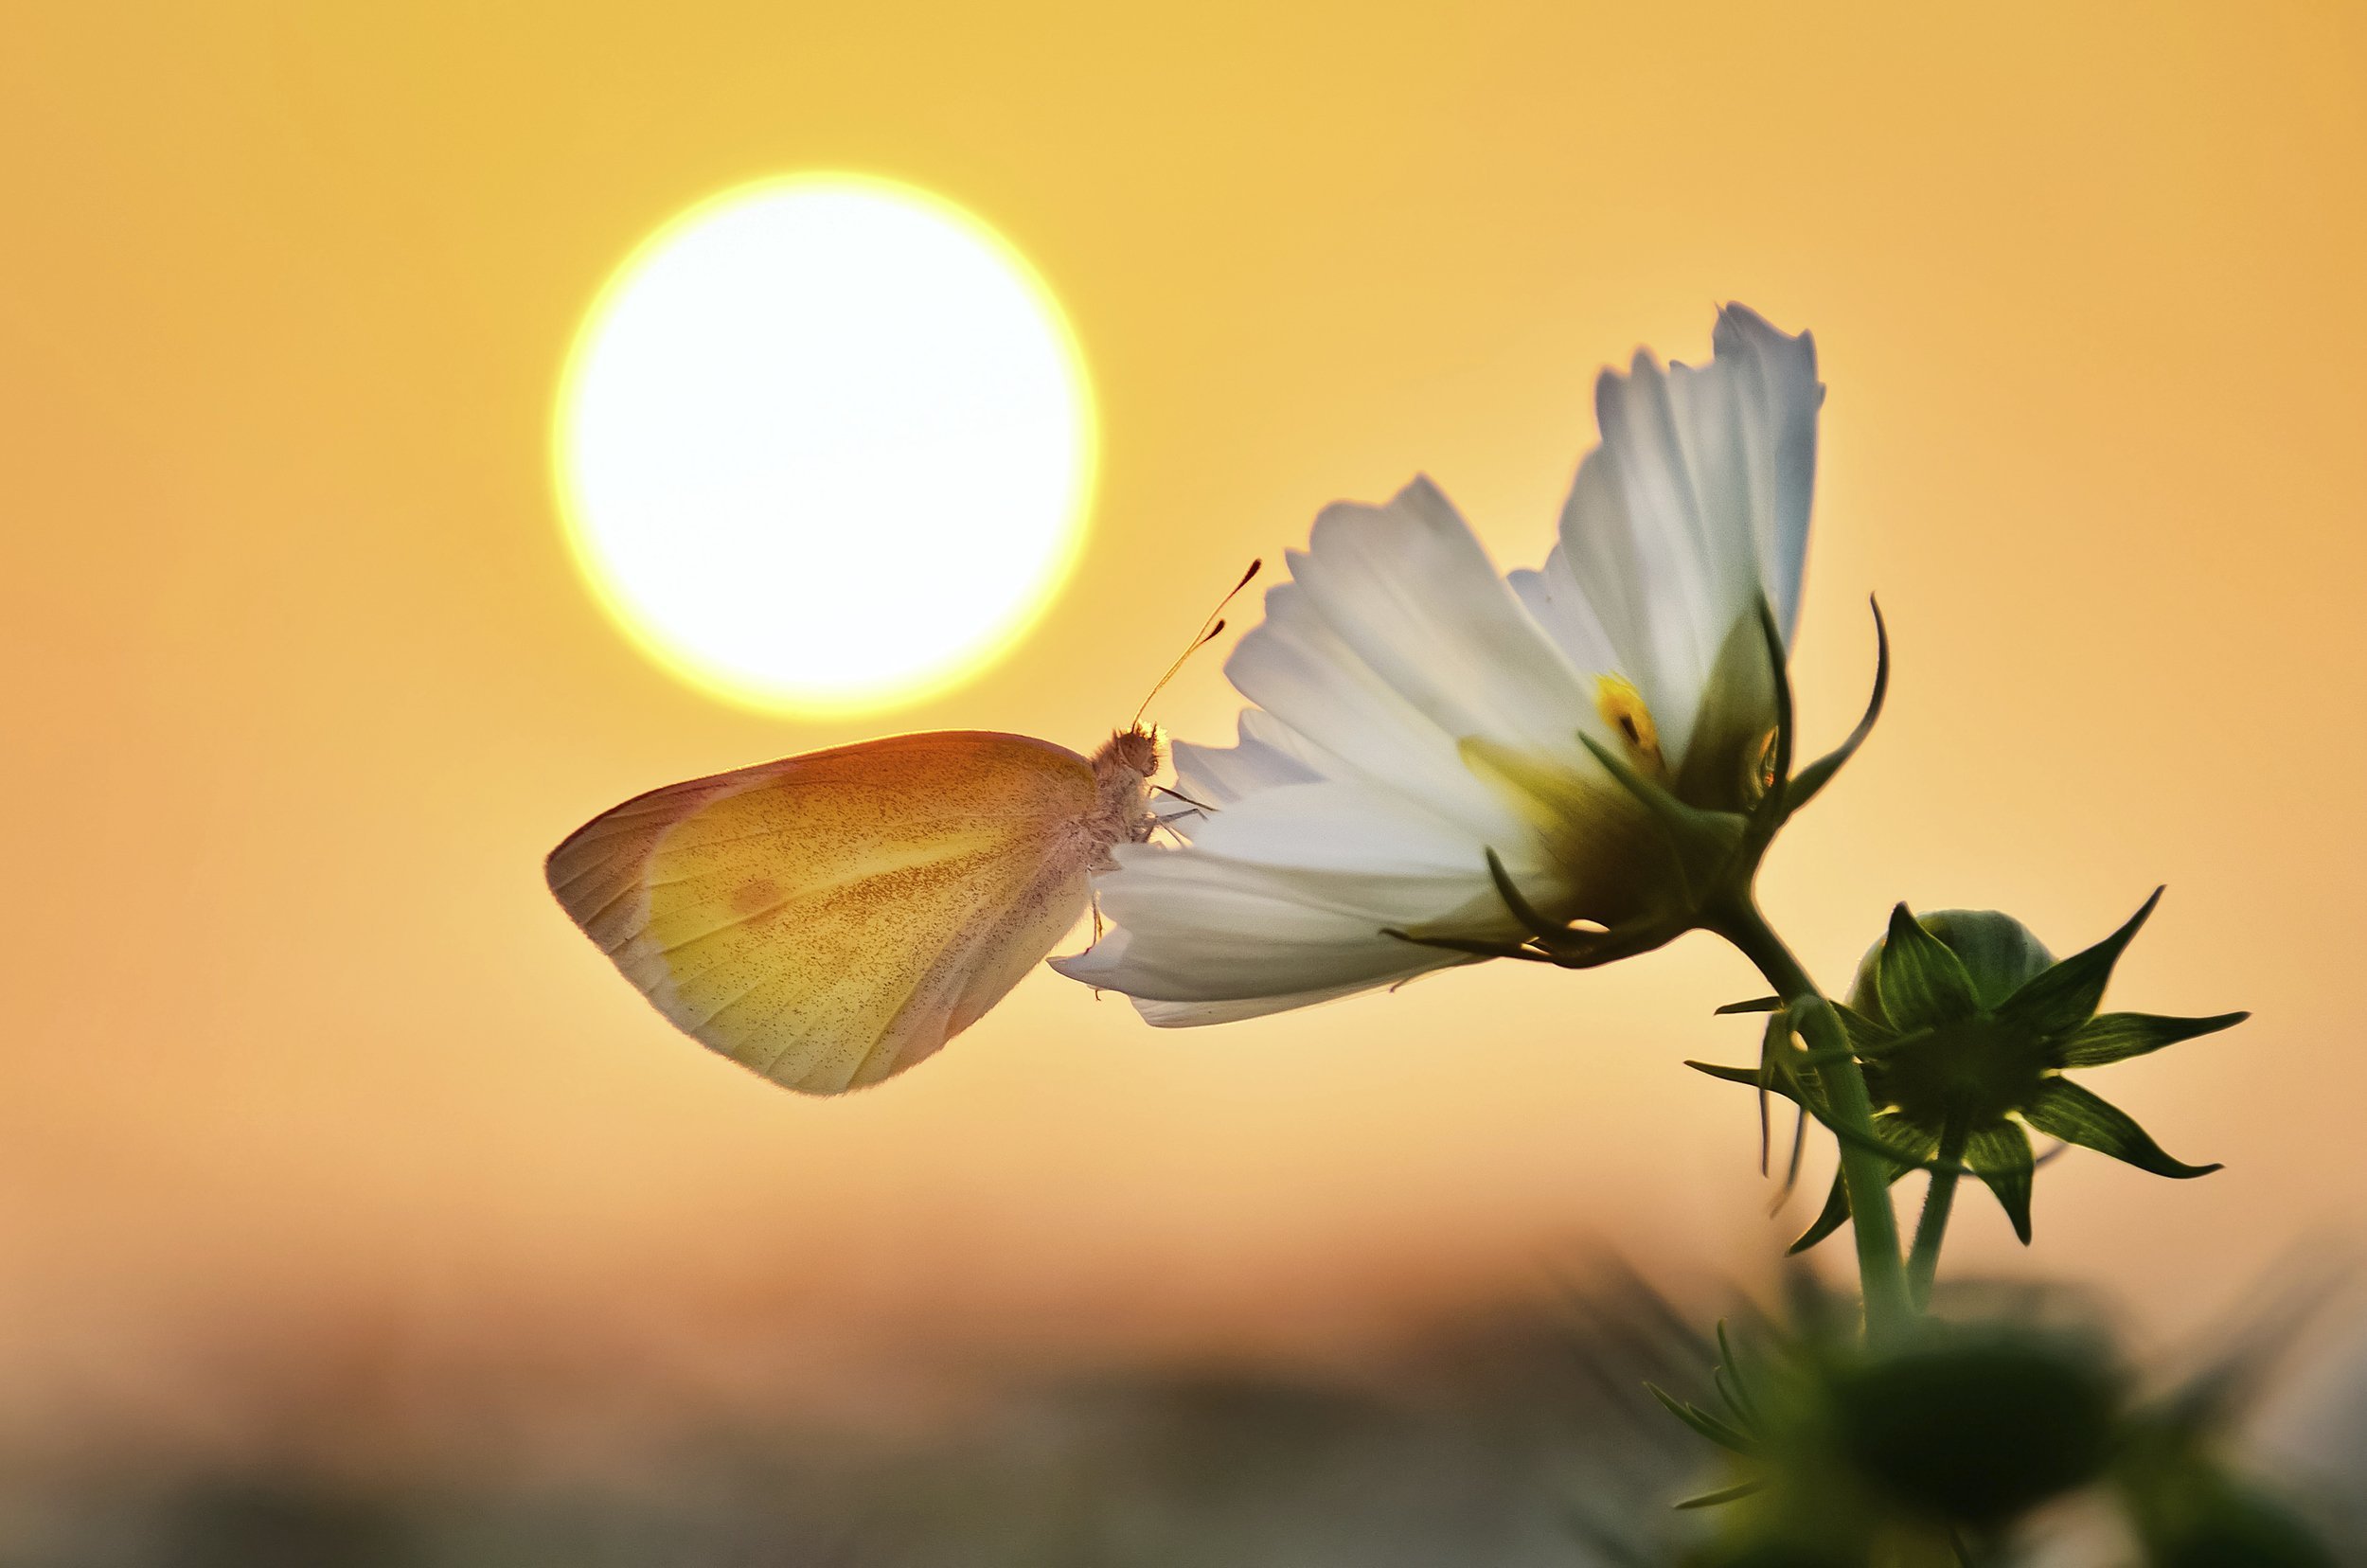 Будет иметь свет жизни. Цветы и солнце. Цветы в лучах солнца. Солнечный цветок. Бабочка в лучах солнца.